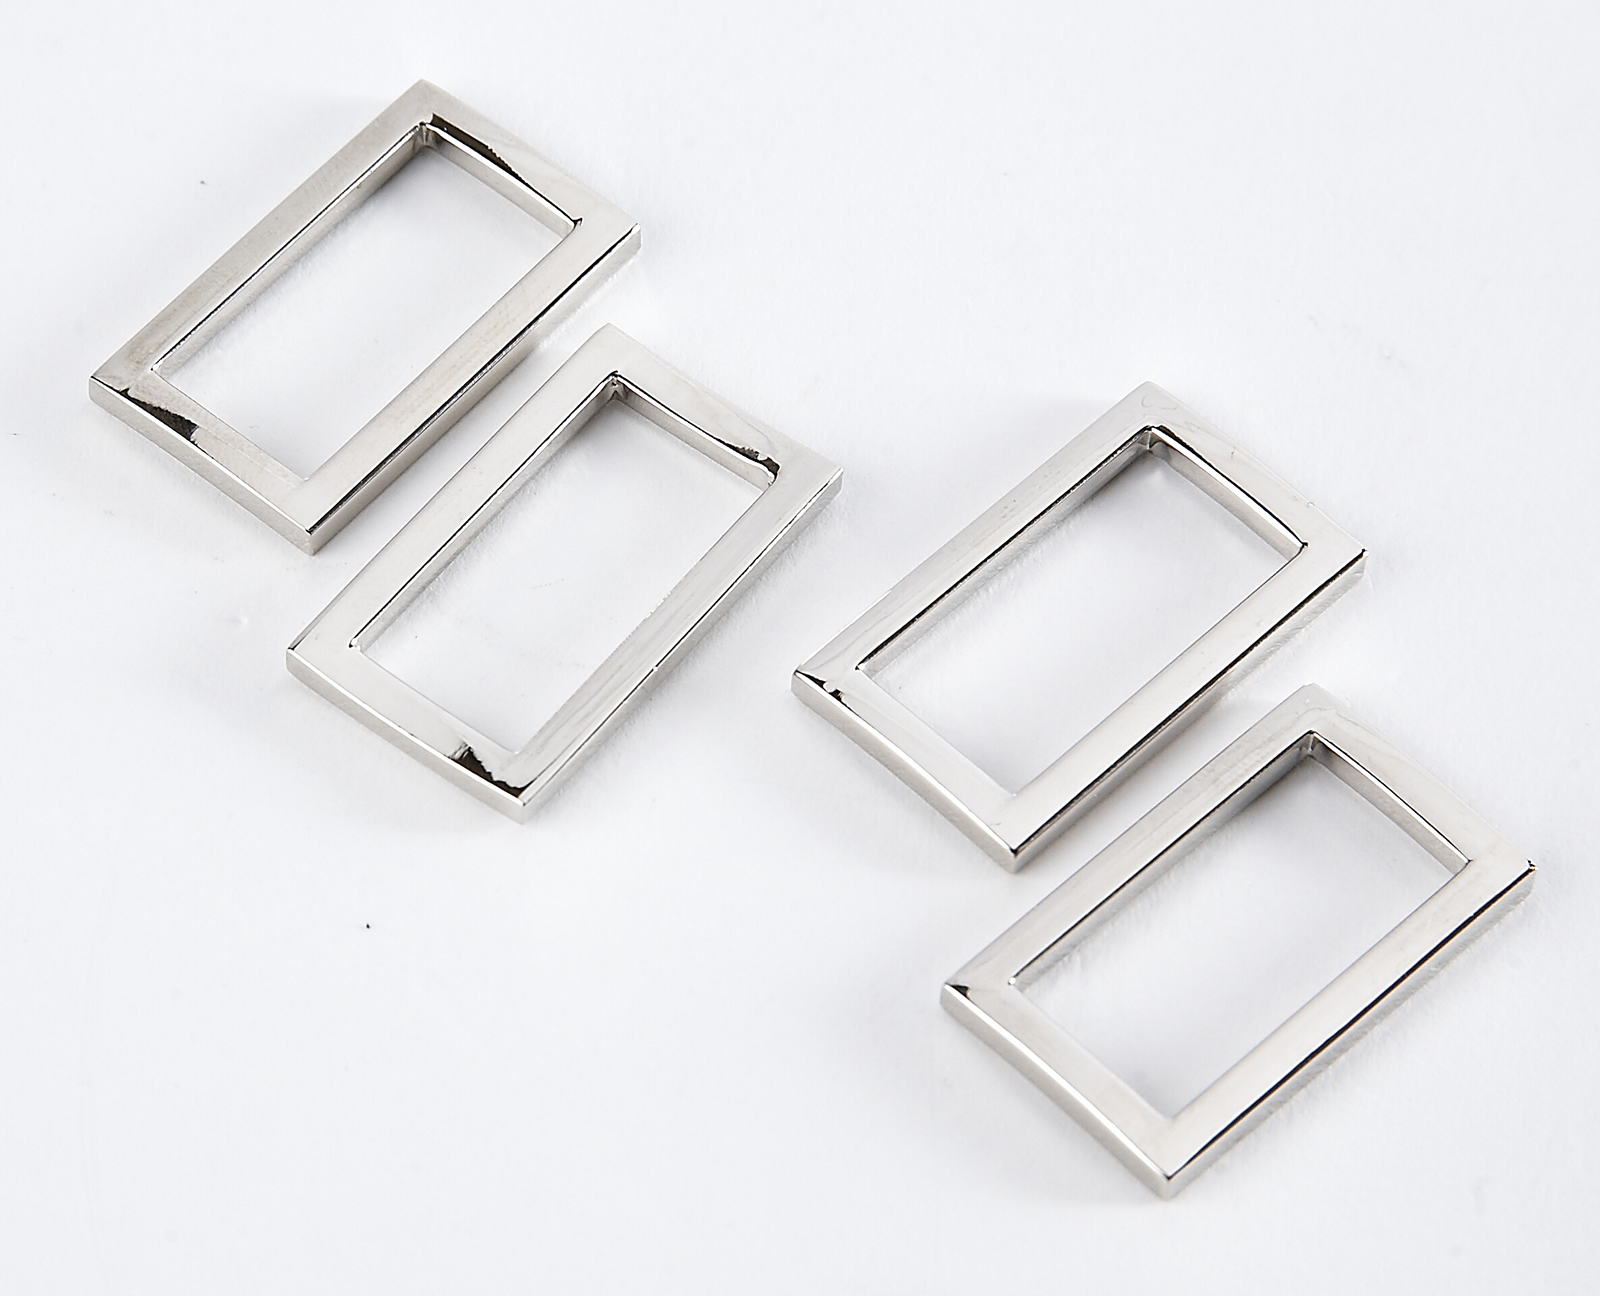 4 x 1" Metal Rectangular Rings - Silver